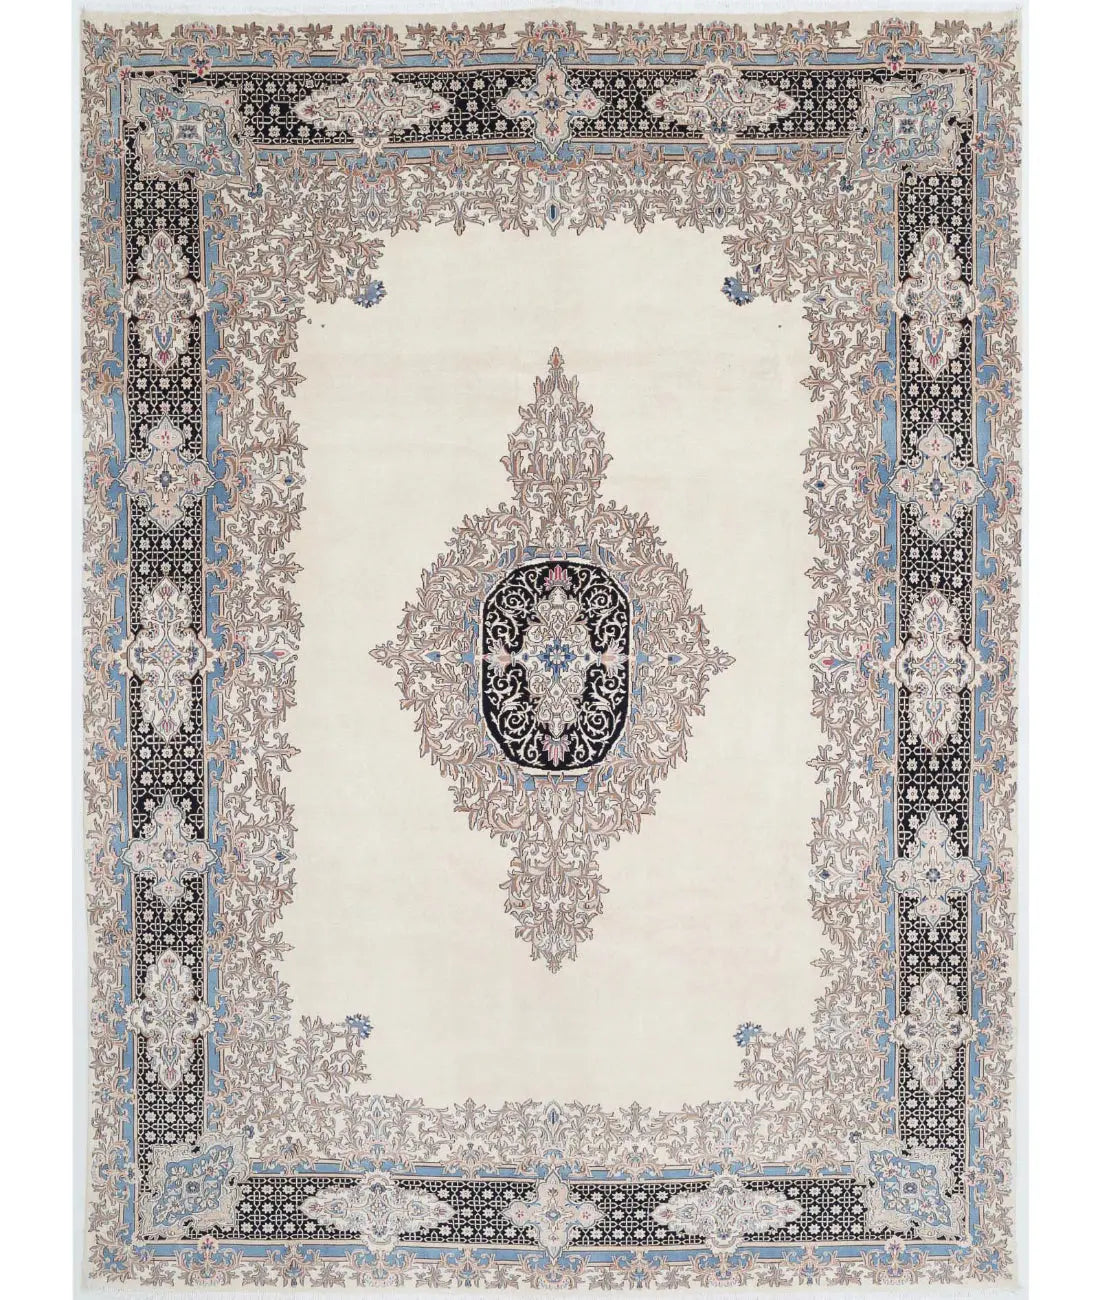 Hand Knotted Antique Persian Kerman Wool Rug - 9'11'' x 13'8'' - Arteverk Rugs Area rug